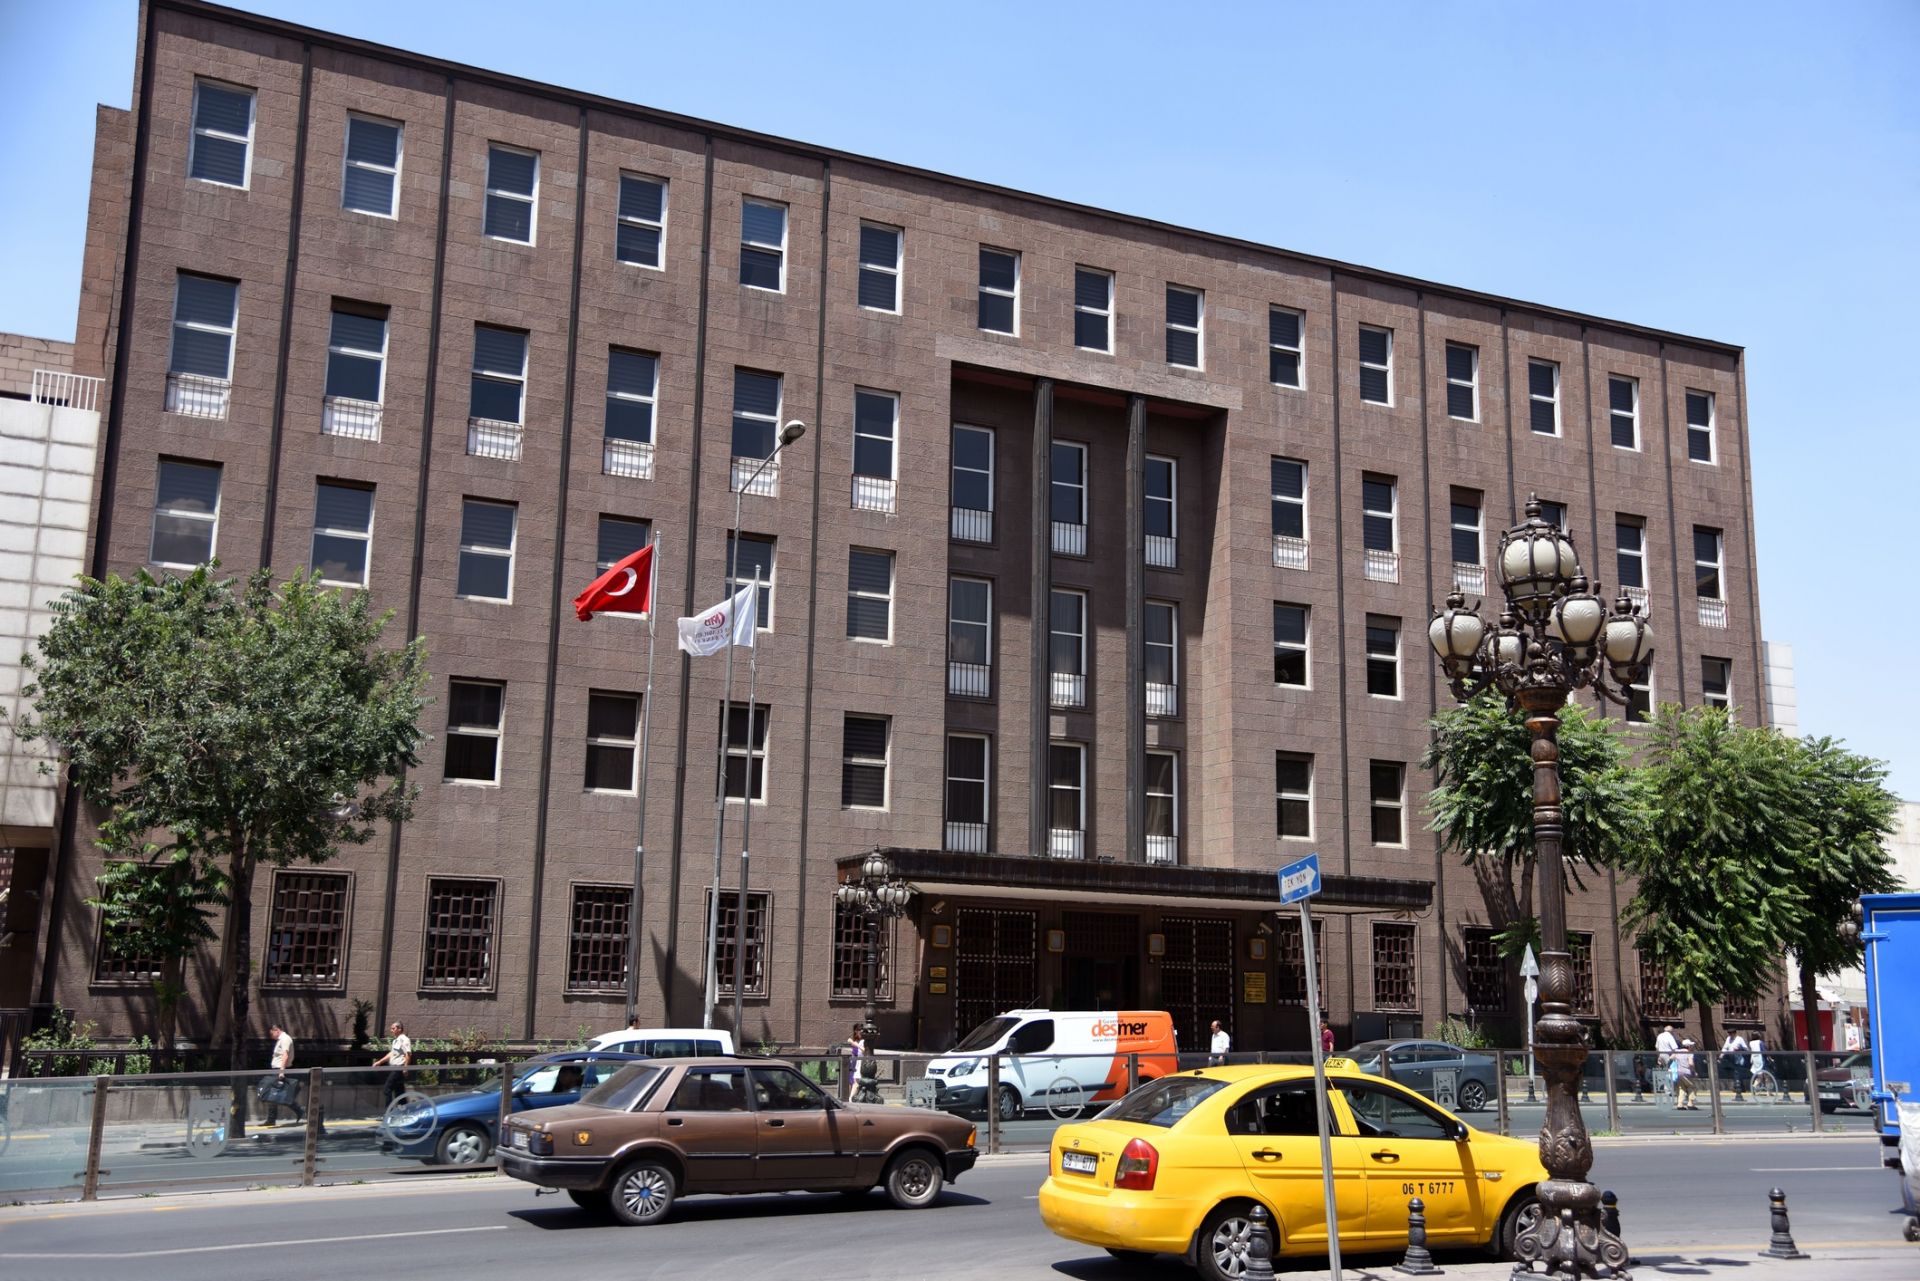 Турската централна банка - Меркез банкасъ, отскоро има нов управител - Наджи Агбал